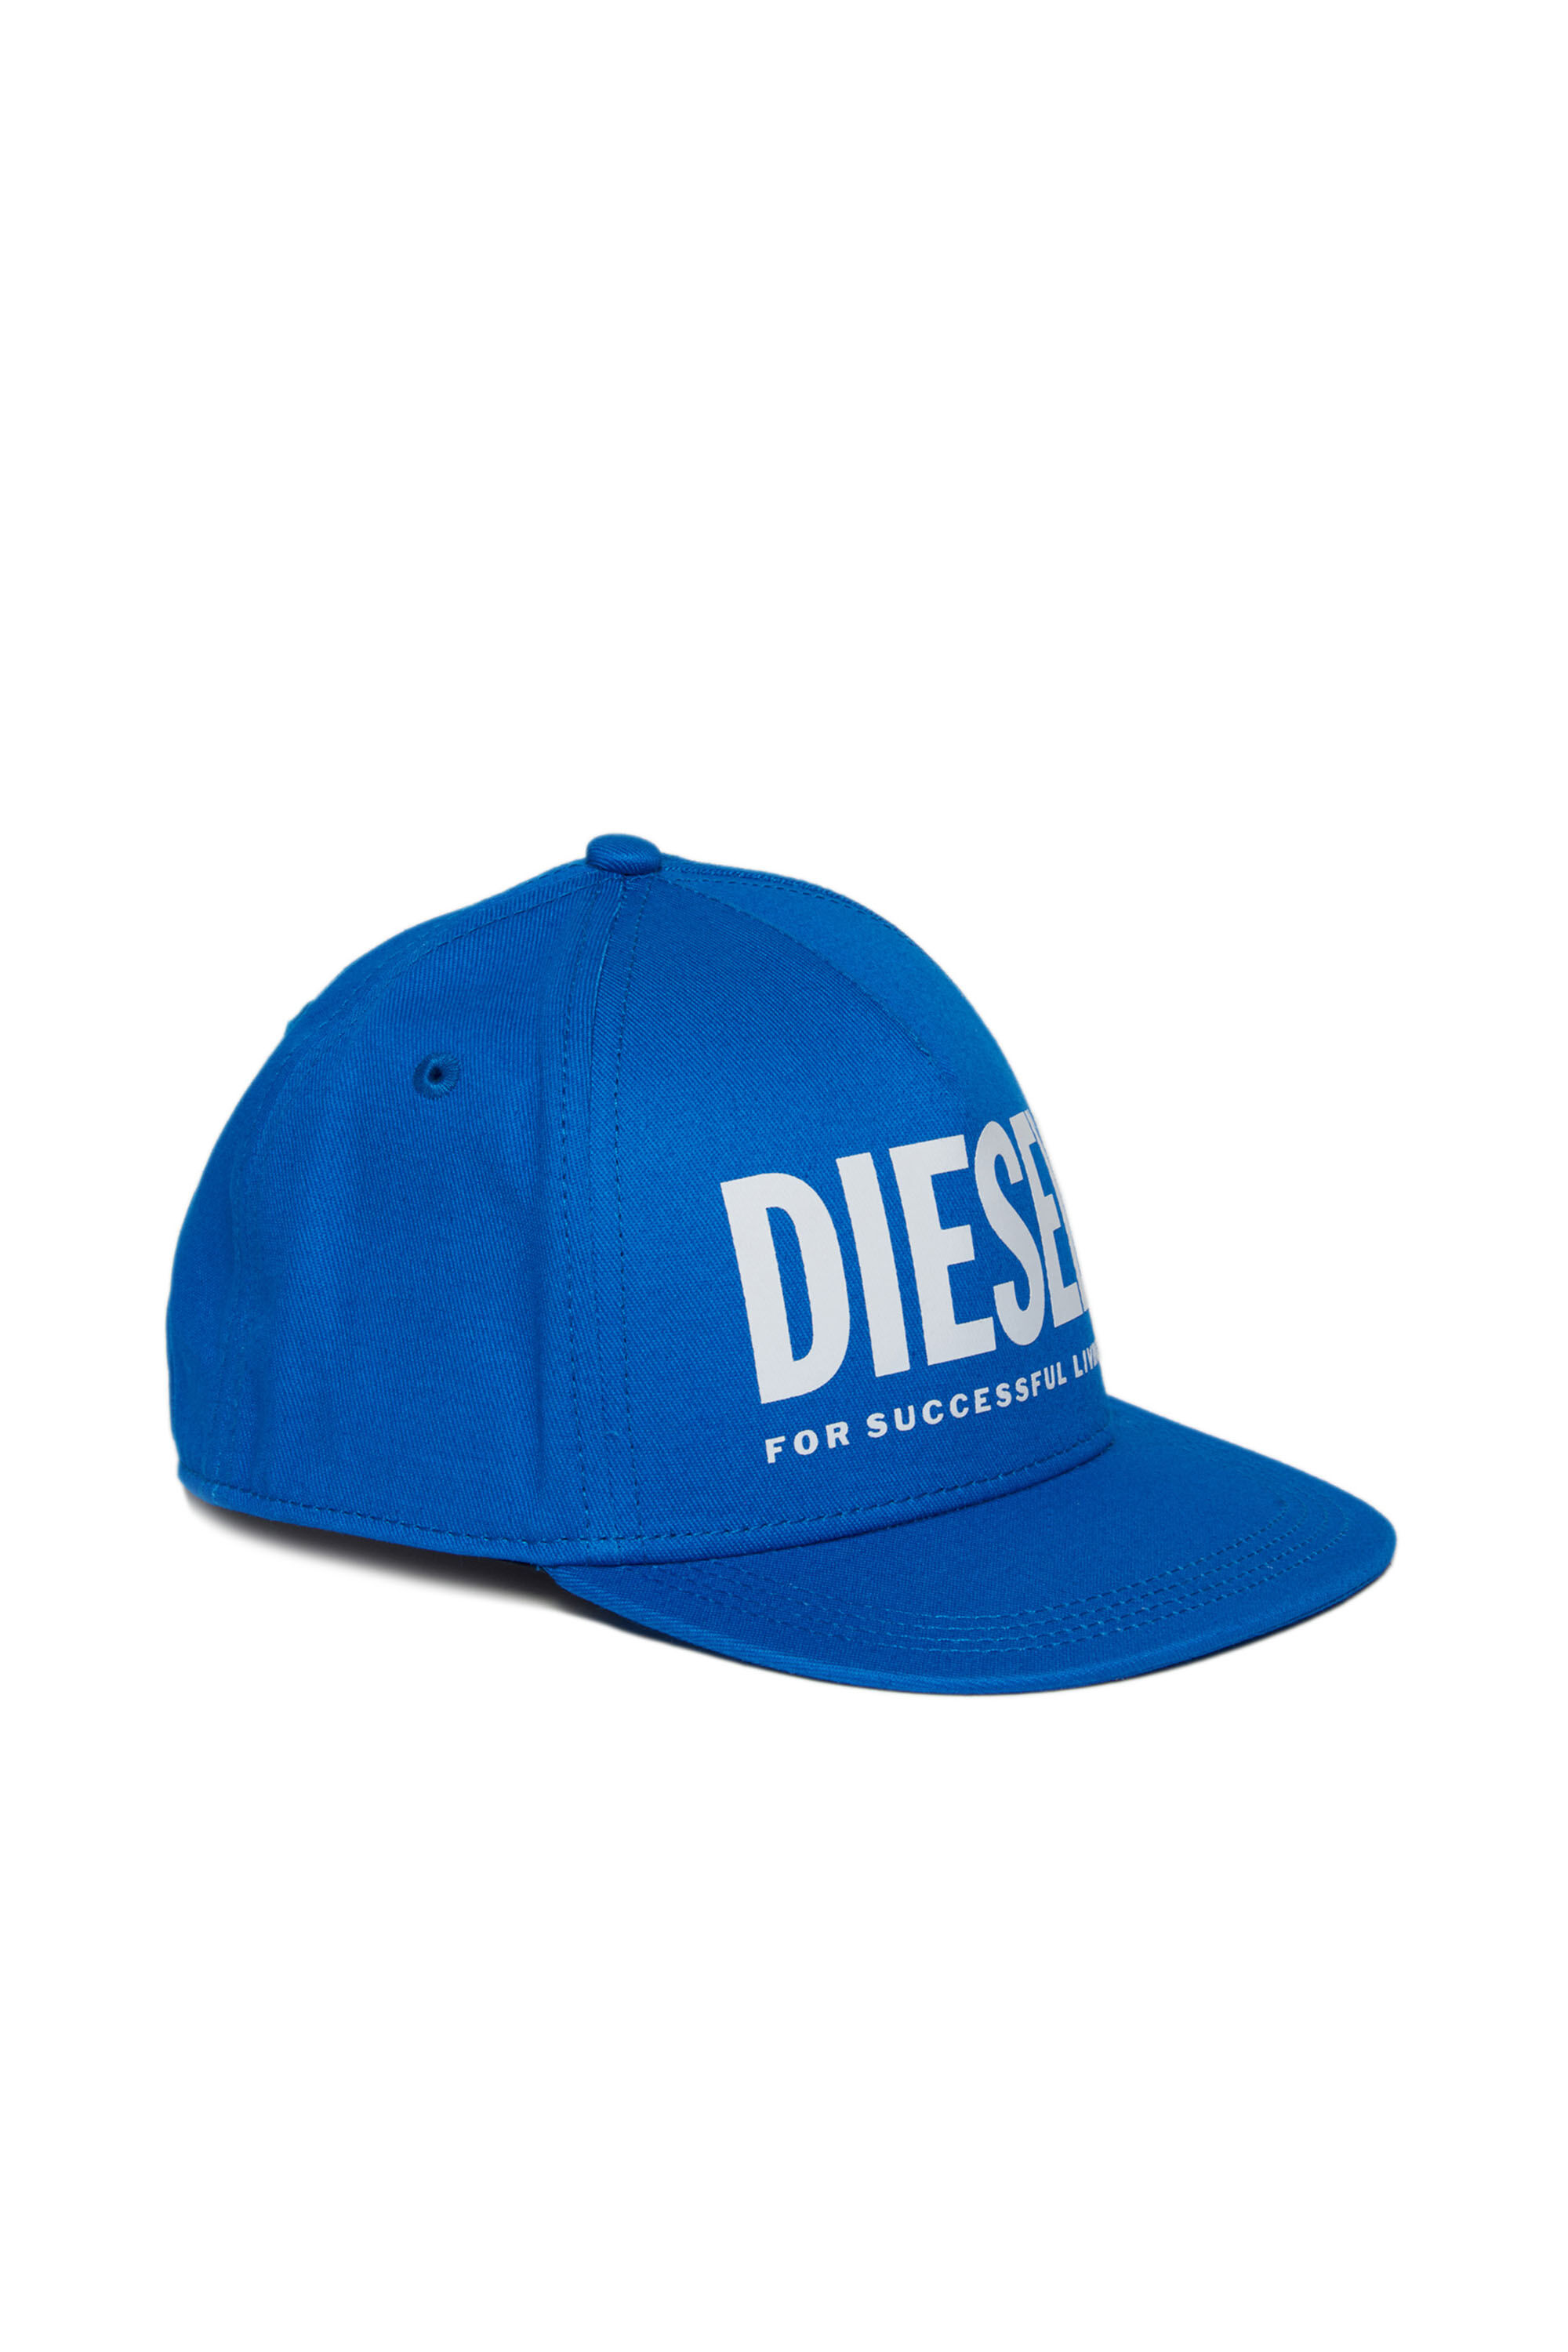 Diesel - FOLLY, Blu - Image 1